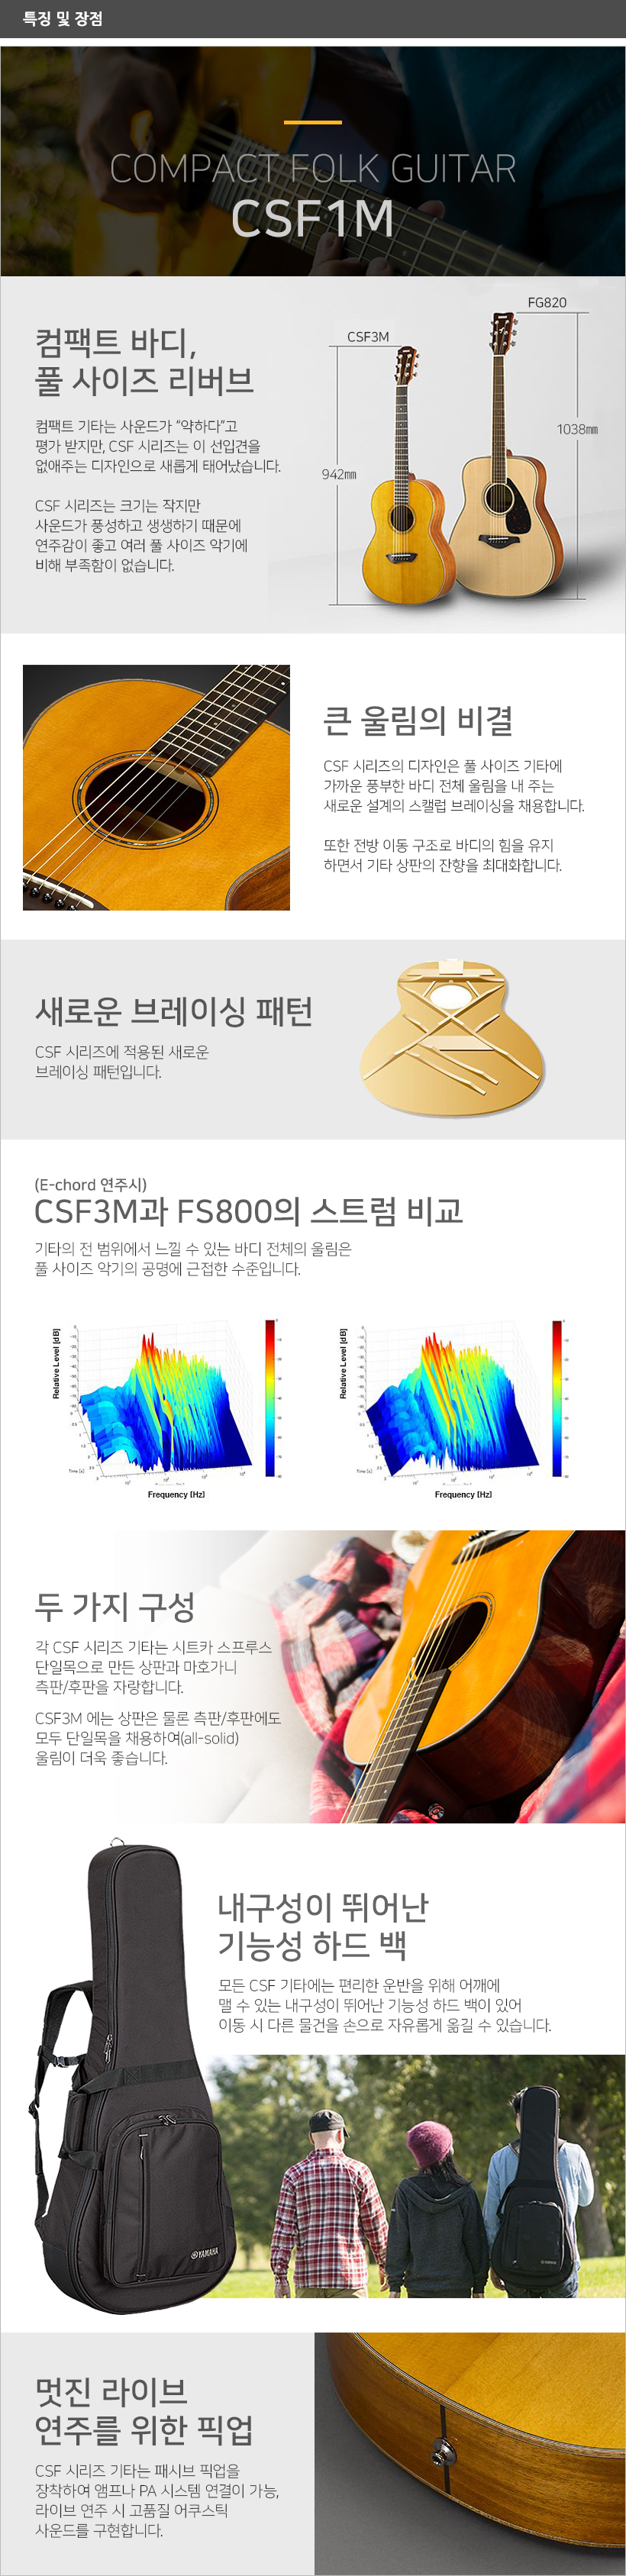 CSF1M 특징 및 장점